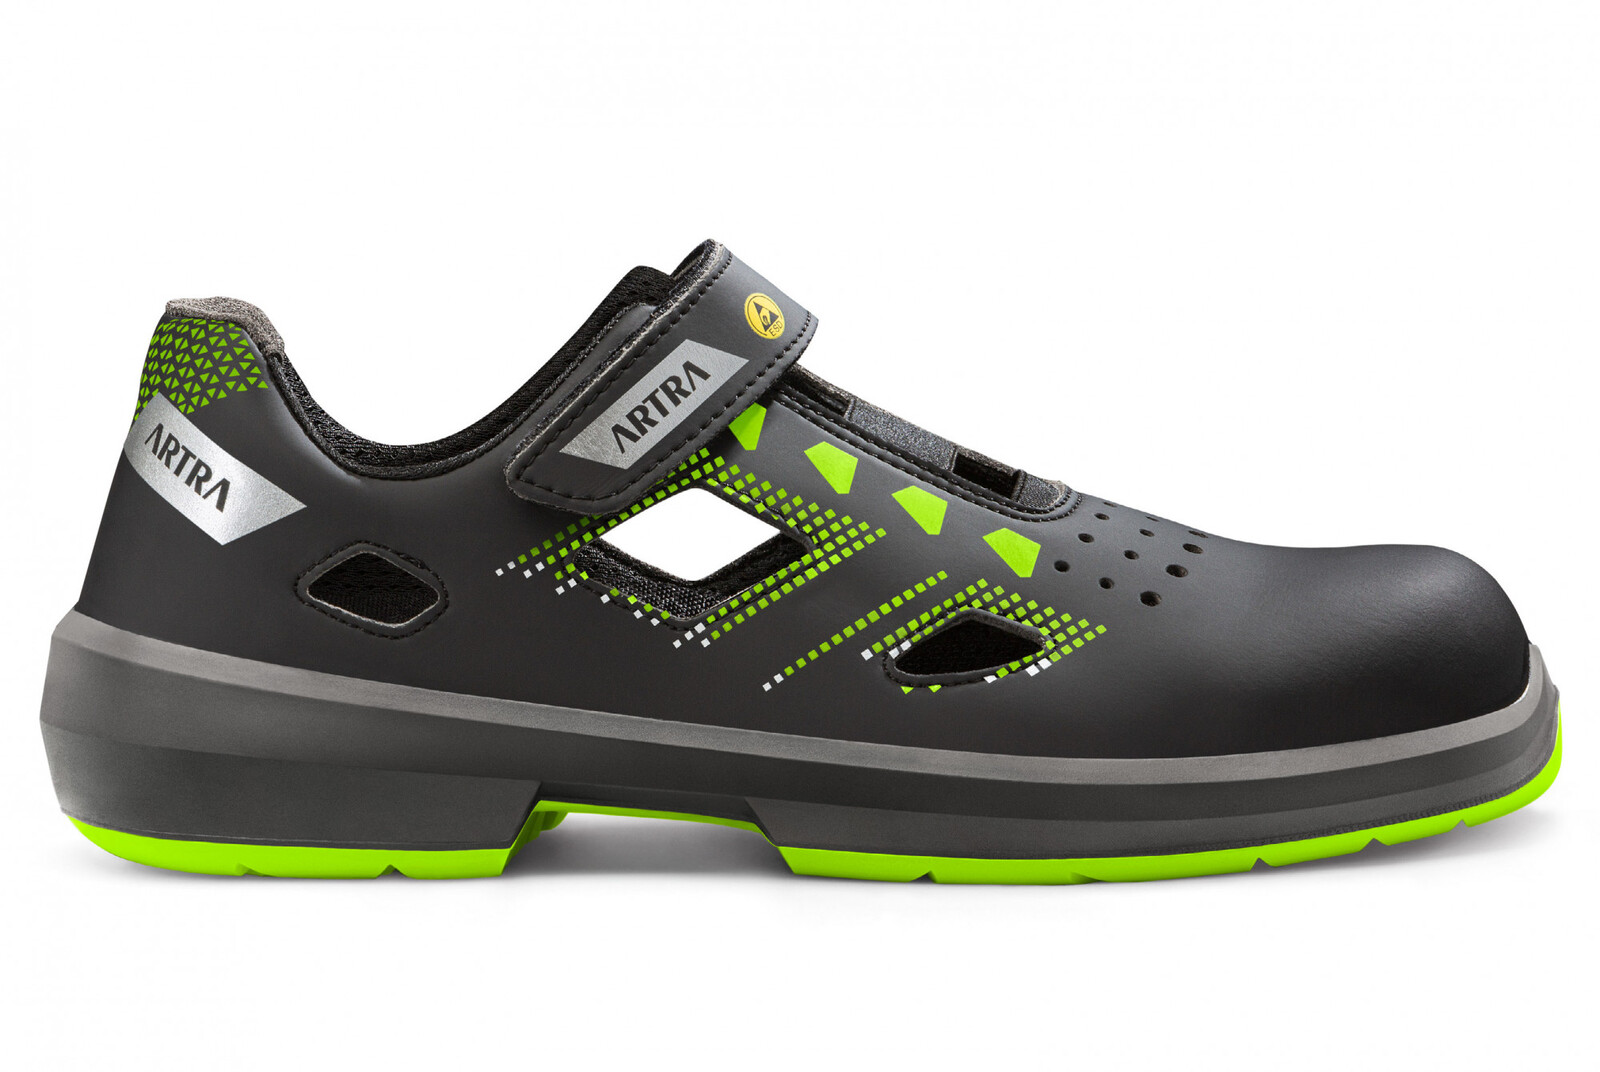 Bezpečnostné sandále Artra Arzo 805 678080 S1 SRC ESD MF - veľkosť: 46, farba: čierna/zelená